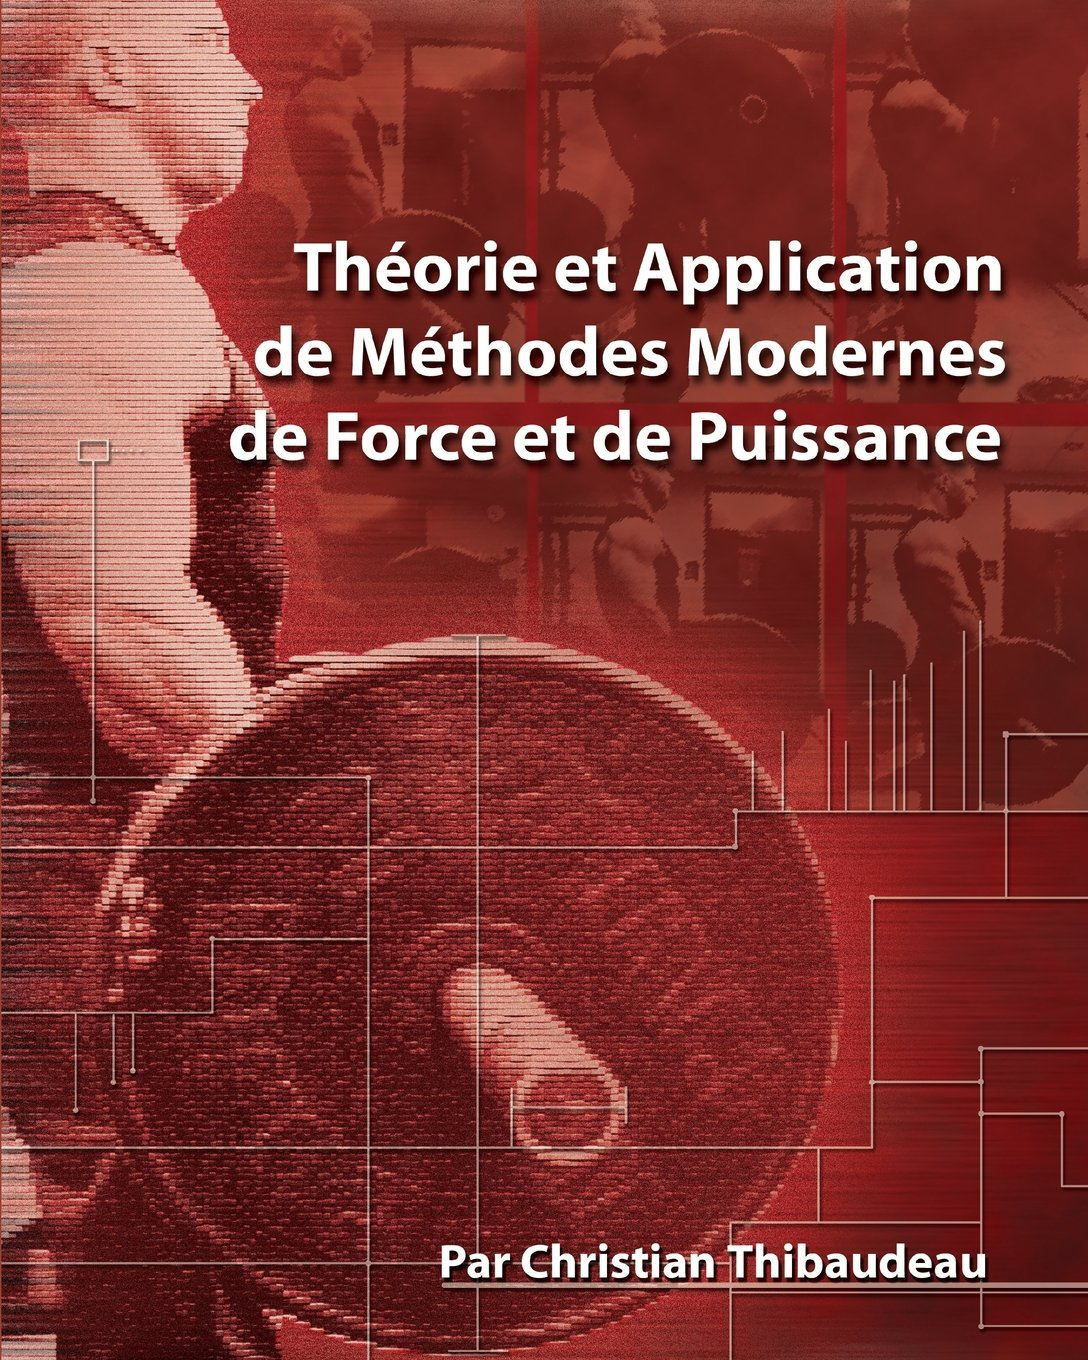 Theorie et Application de Methodes Modernes de Force et de Puissance: Methodes modernes pour develop